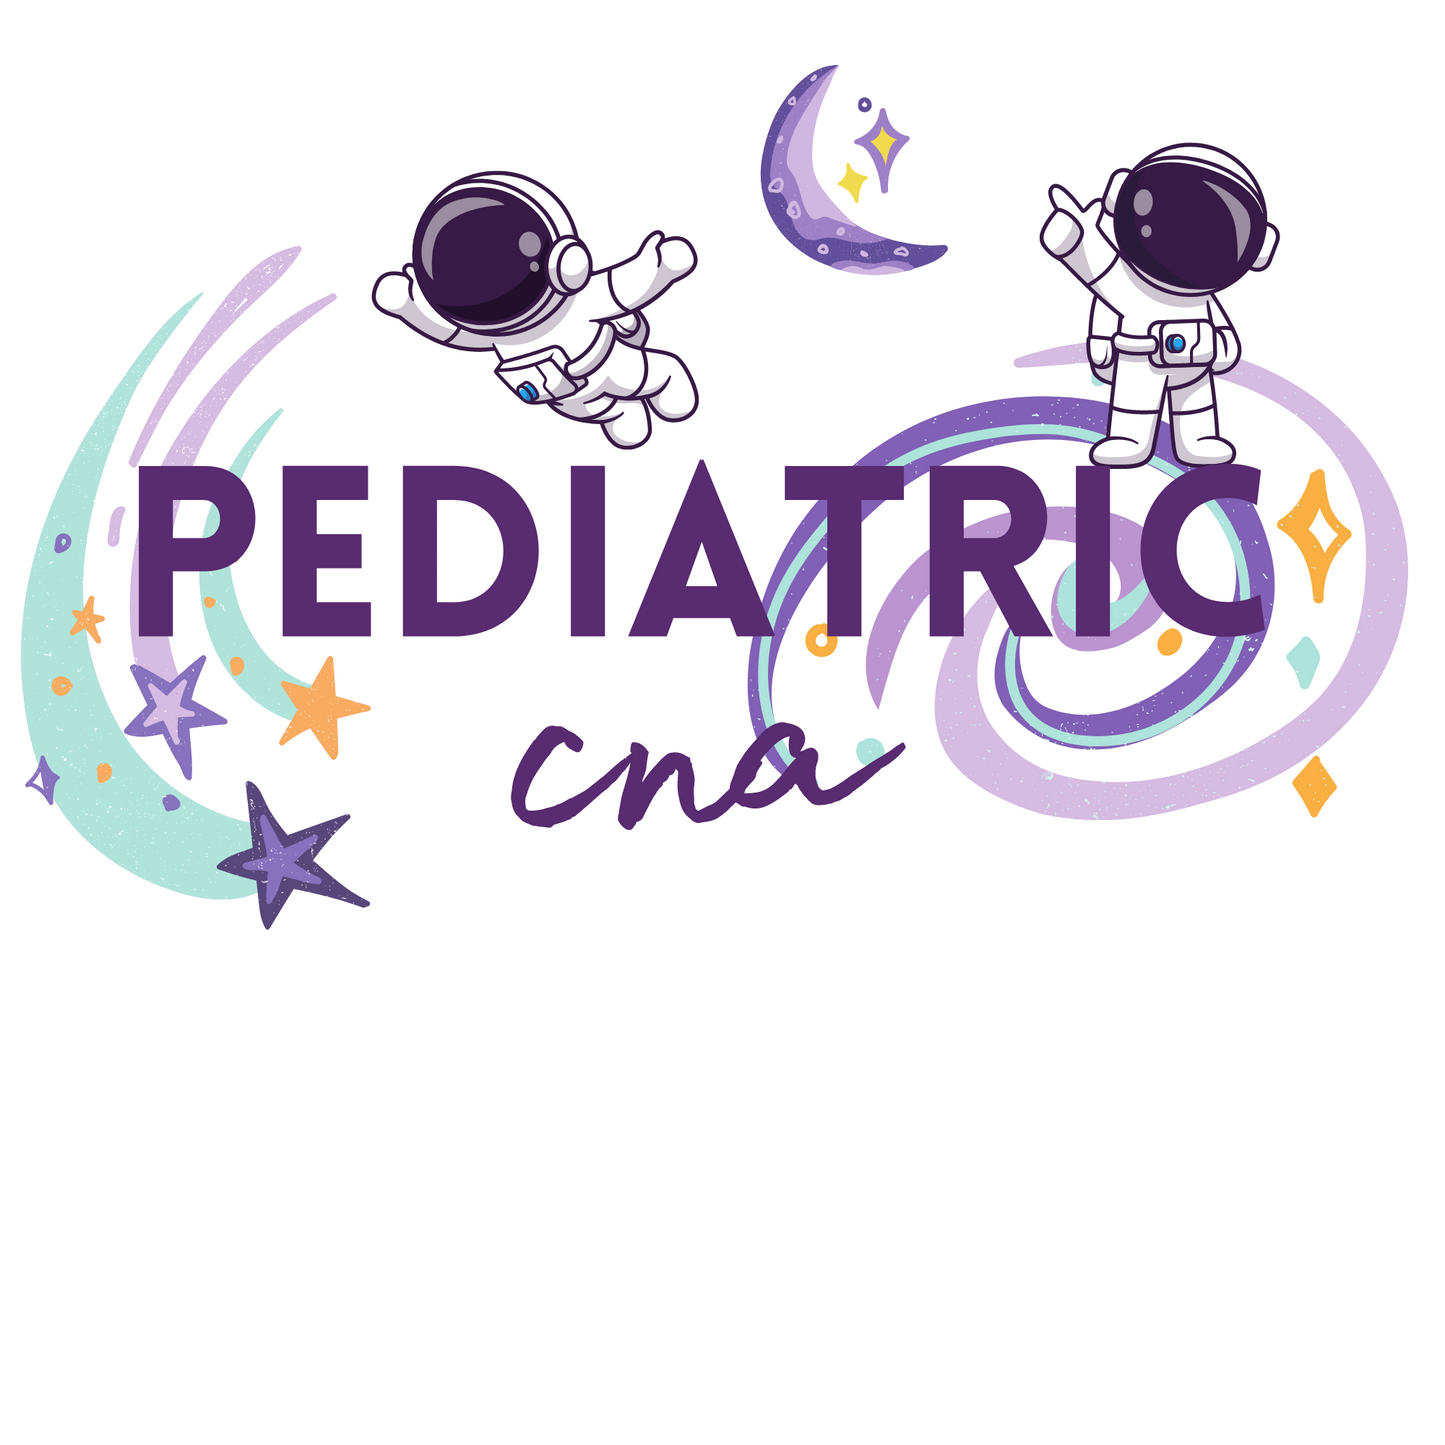 Pediatric Nurse Crew